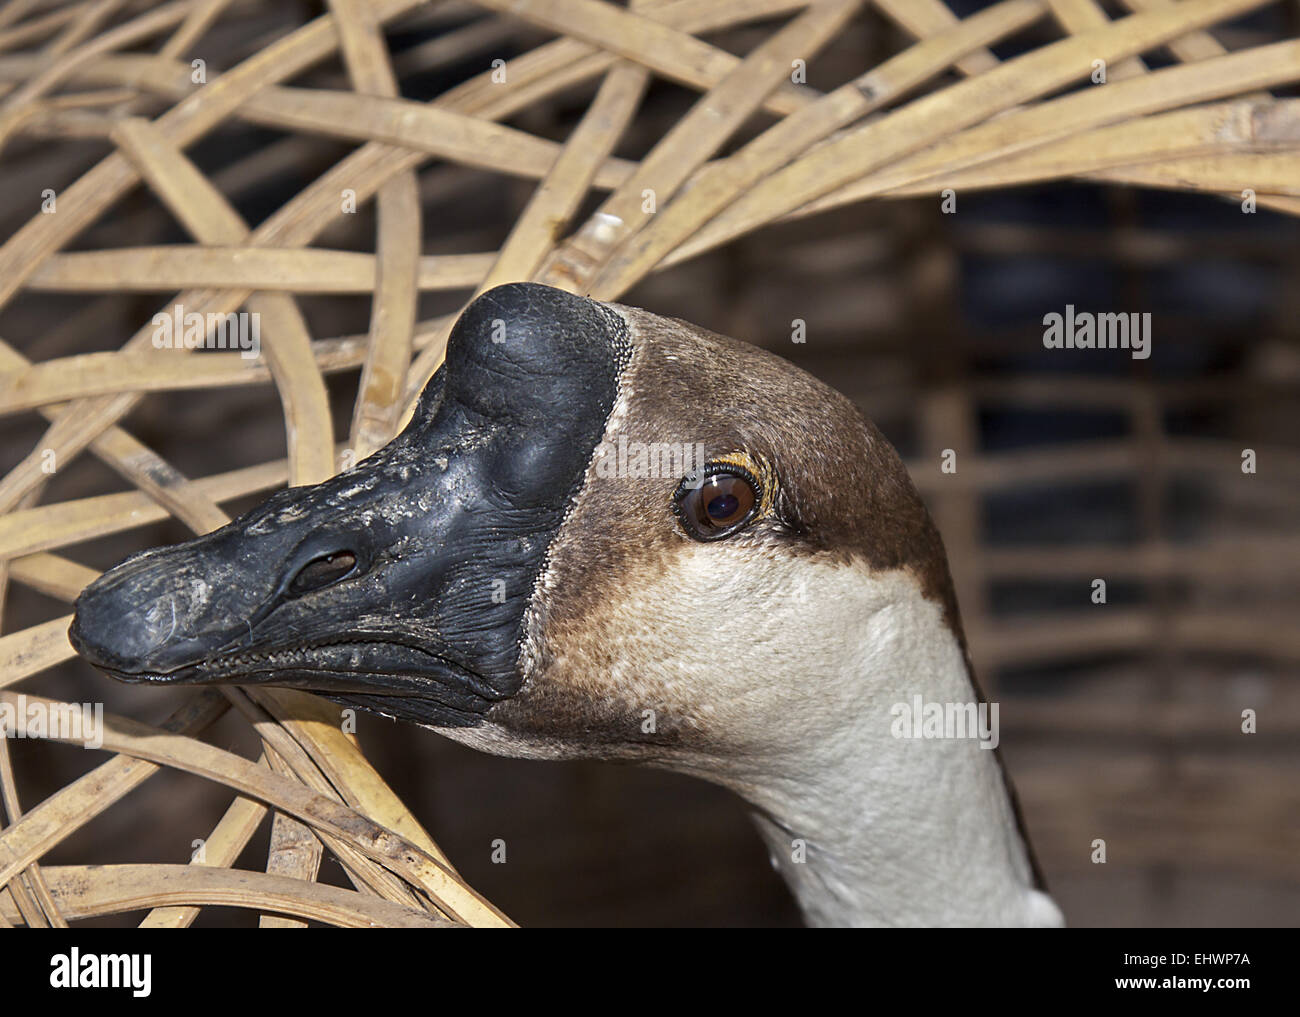 Knob geese Stock Photo